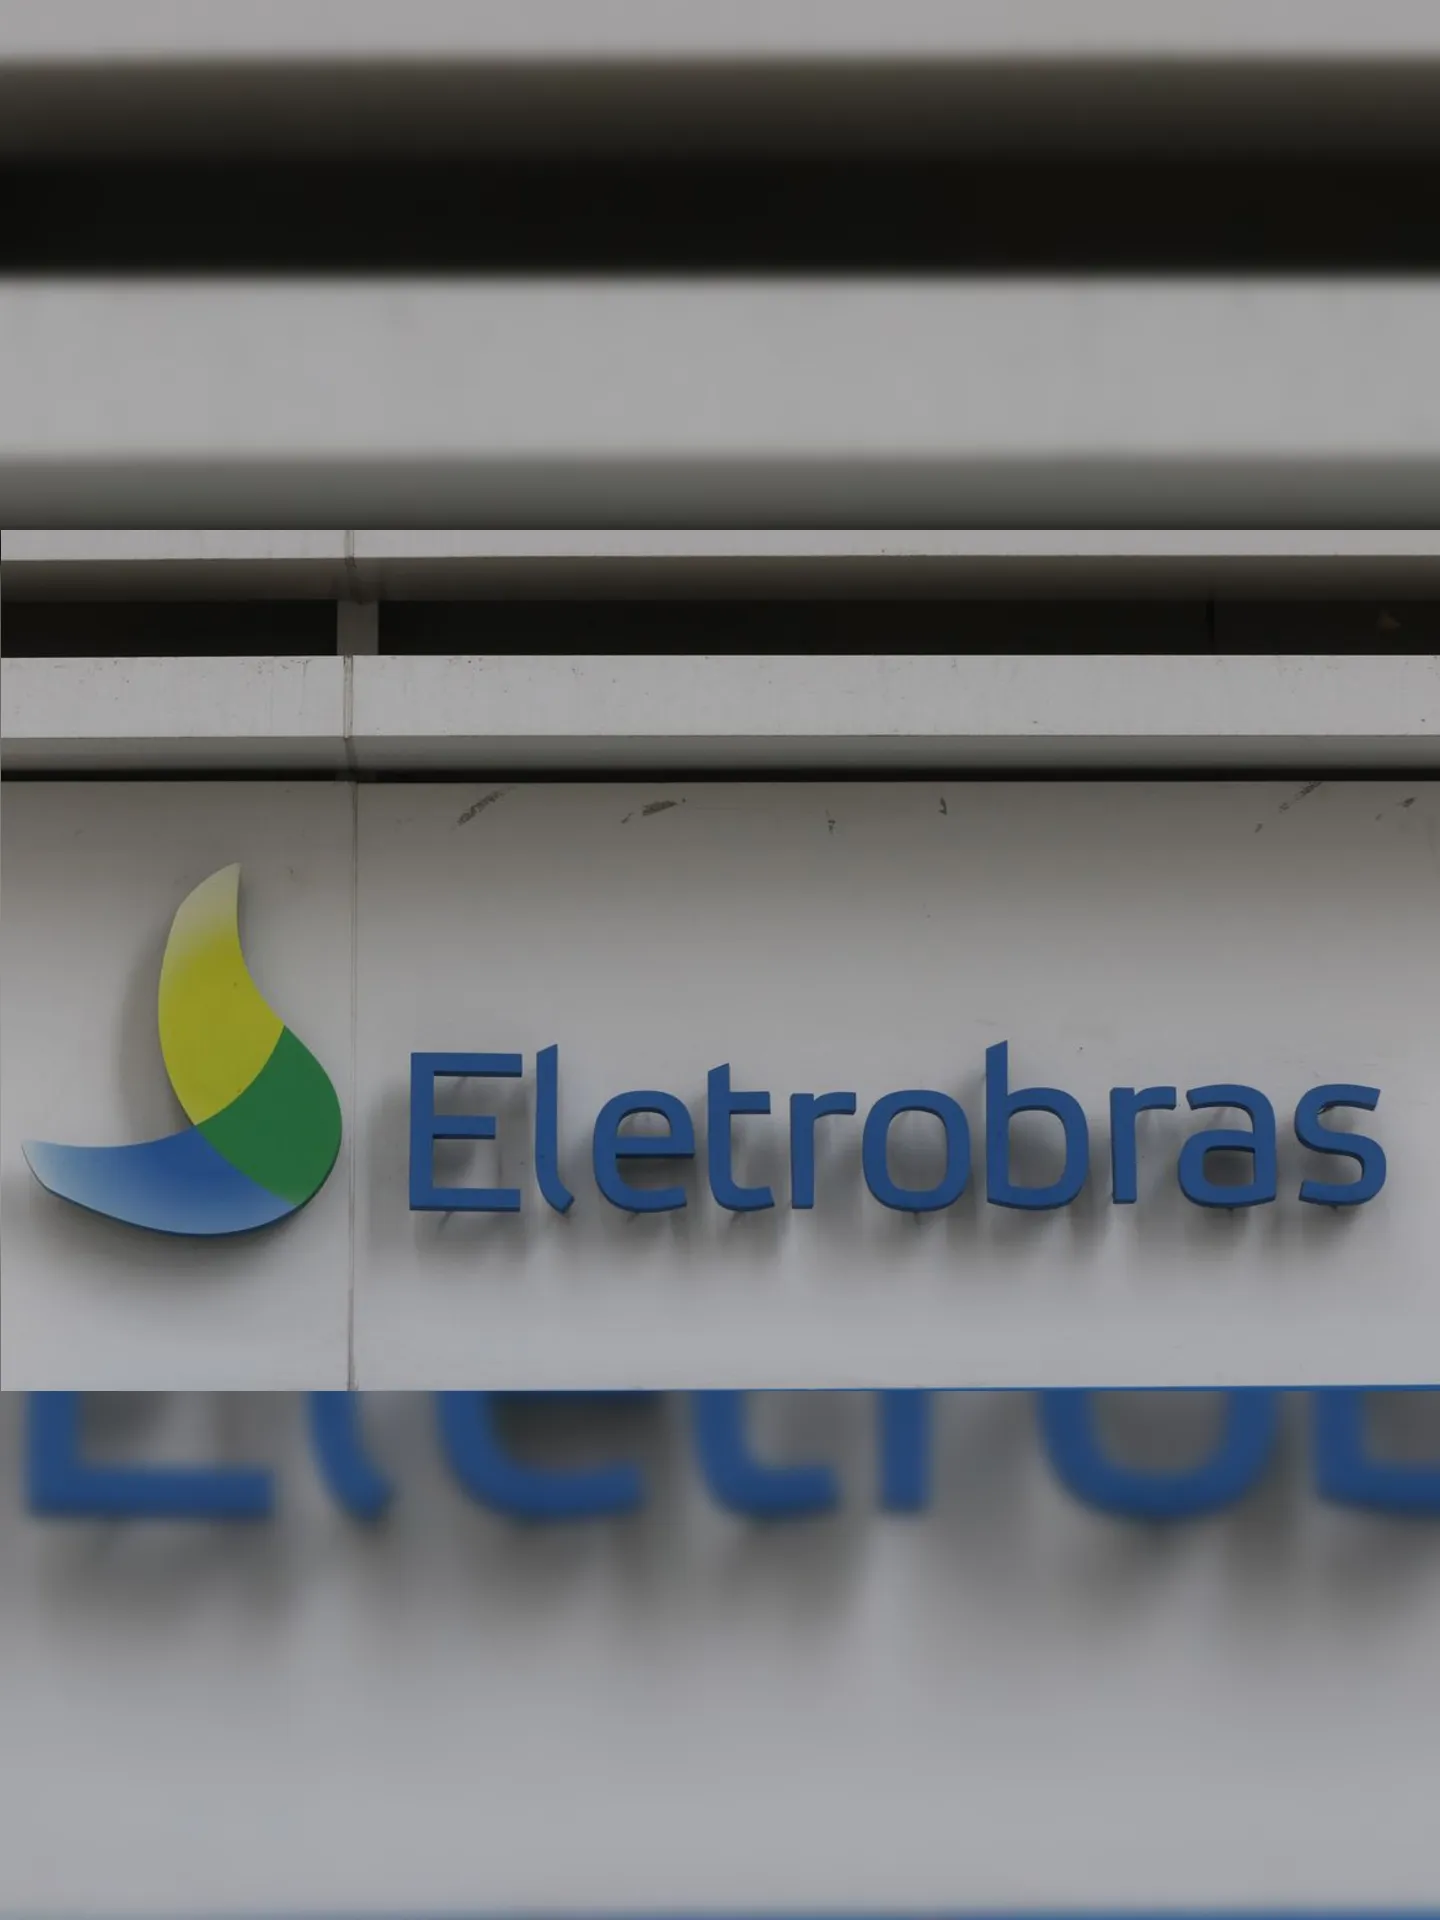 Este é o primeiro processo seletivo promovido pela Eletrobras após a sua privatização, realizada em 2022